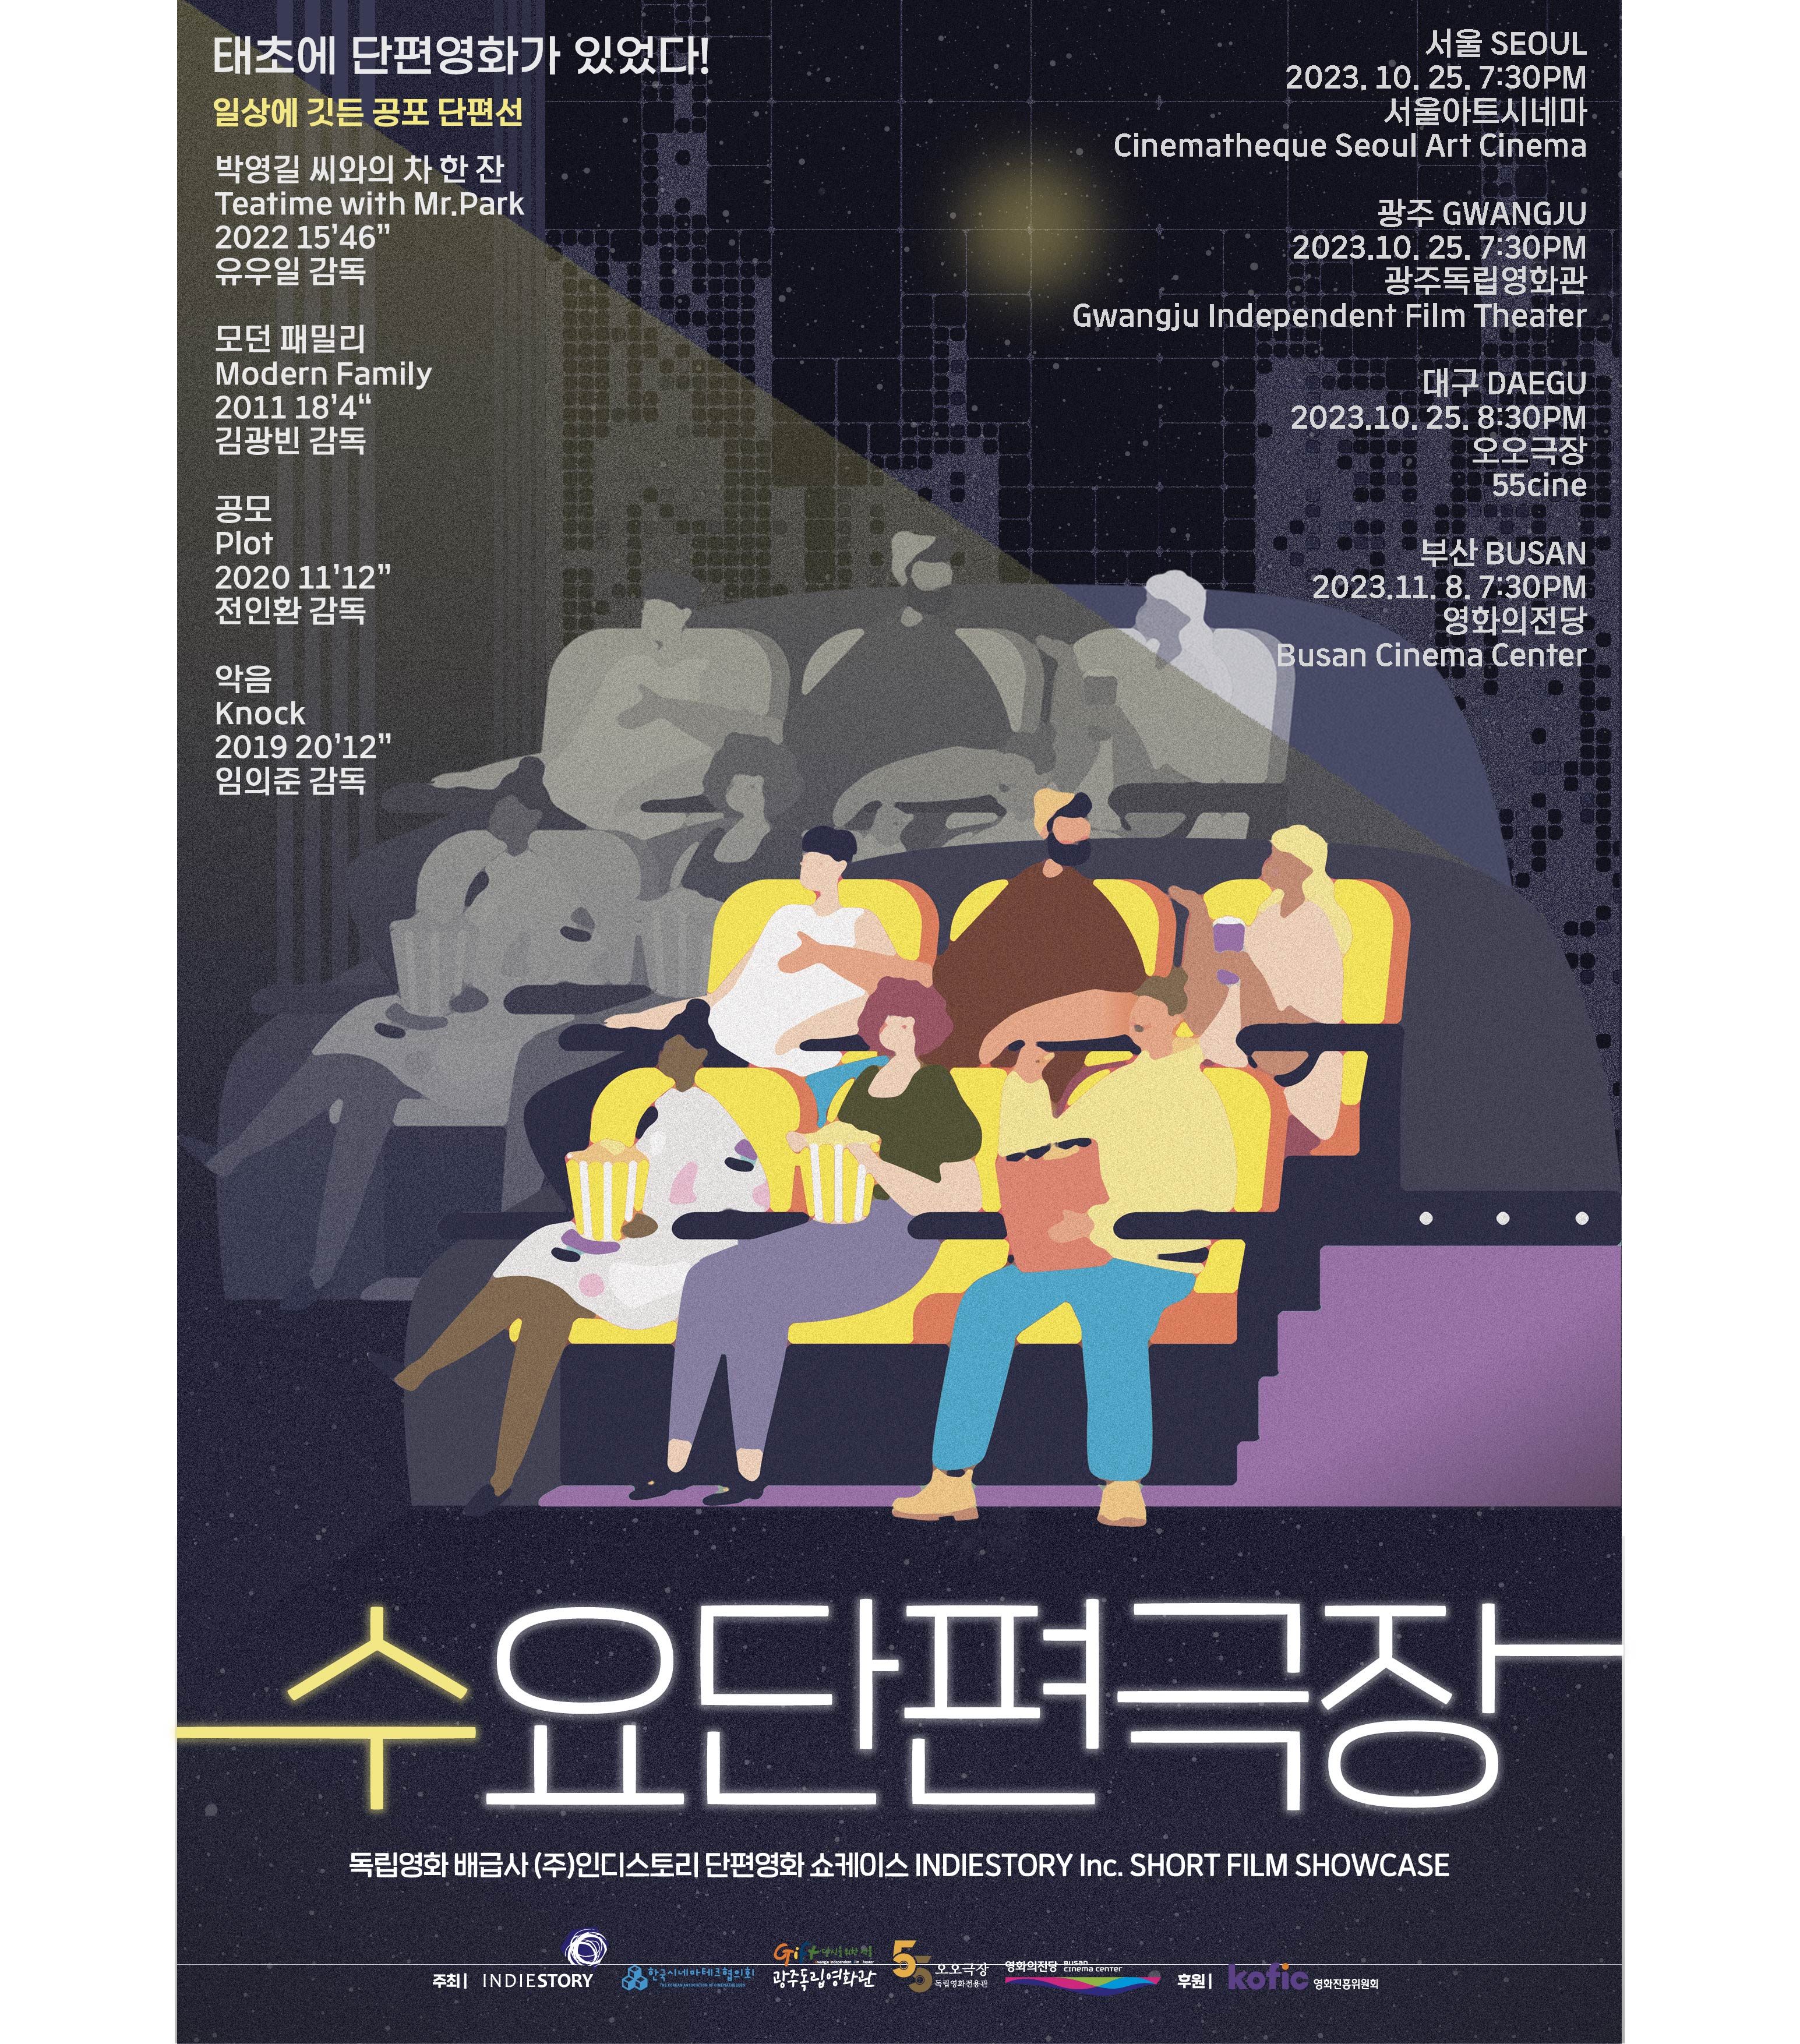 부산 2023.11.8 7:30PM 영화의전당 Busan Cinema Center